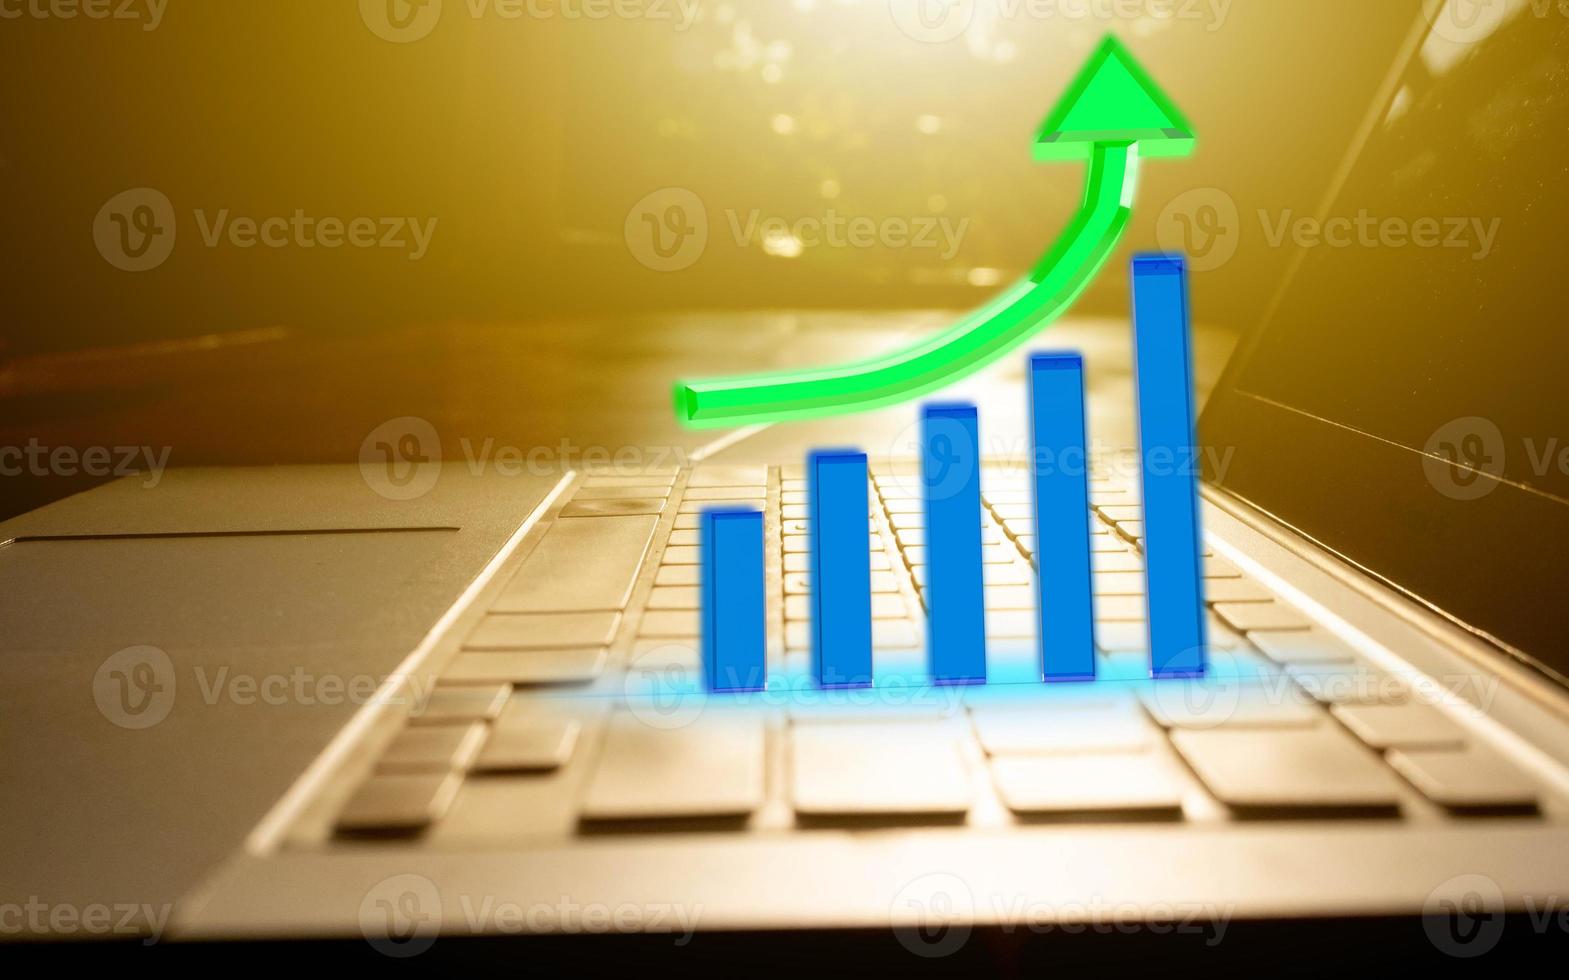 dator anteckningsbok surfplatta tangentbord kontrolldiagram graf blå grön pil tillväxt upp riktning statistik data företag försäljning marknadsföring finansiell aktiekurs investering ekonomi näringsidkare målrapport framgång foto